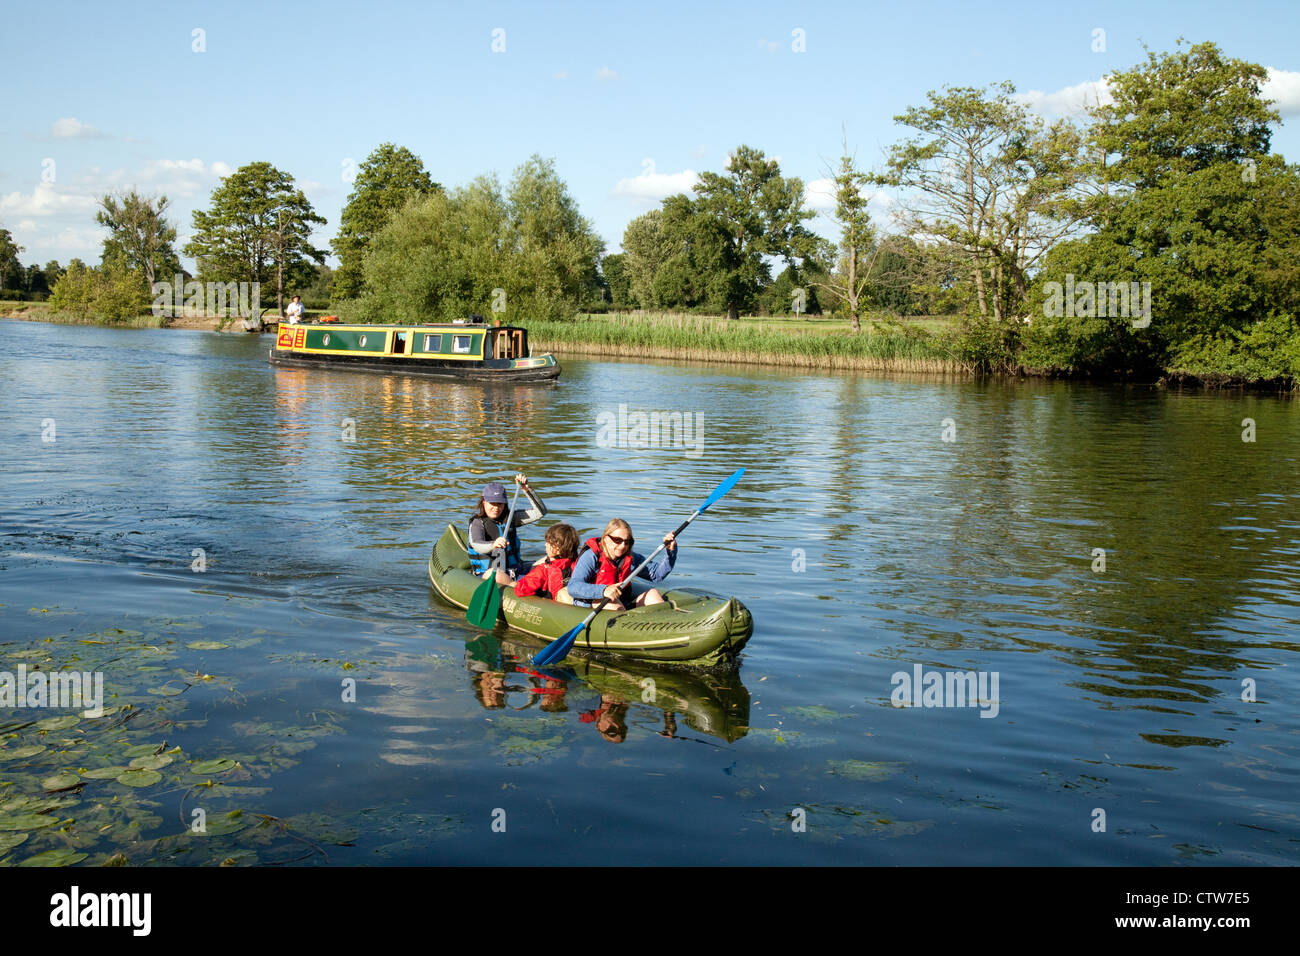 Persone in canal barche e canoe su una soleggiata giornata estiva, il fiume Tamigi in Oxfordshire, Regno Unito Foto Stock